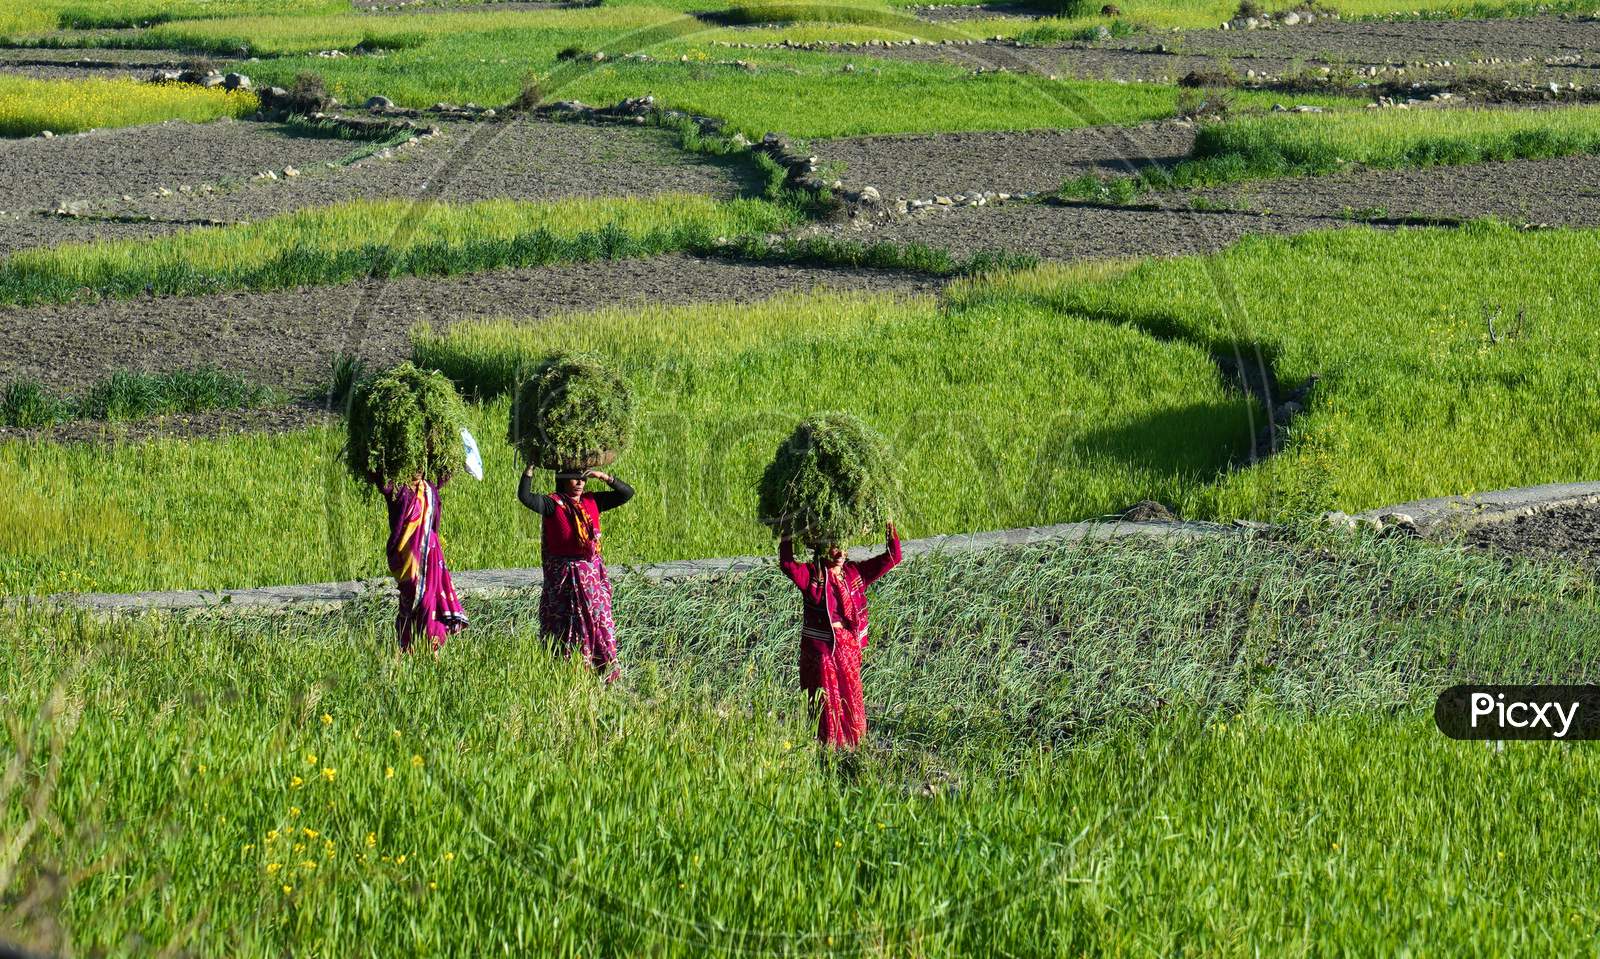 Local women carrying grass heaps